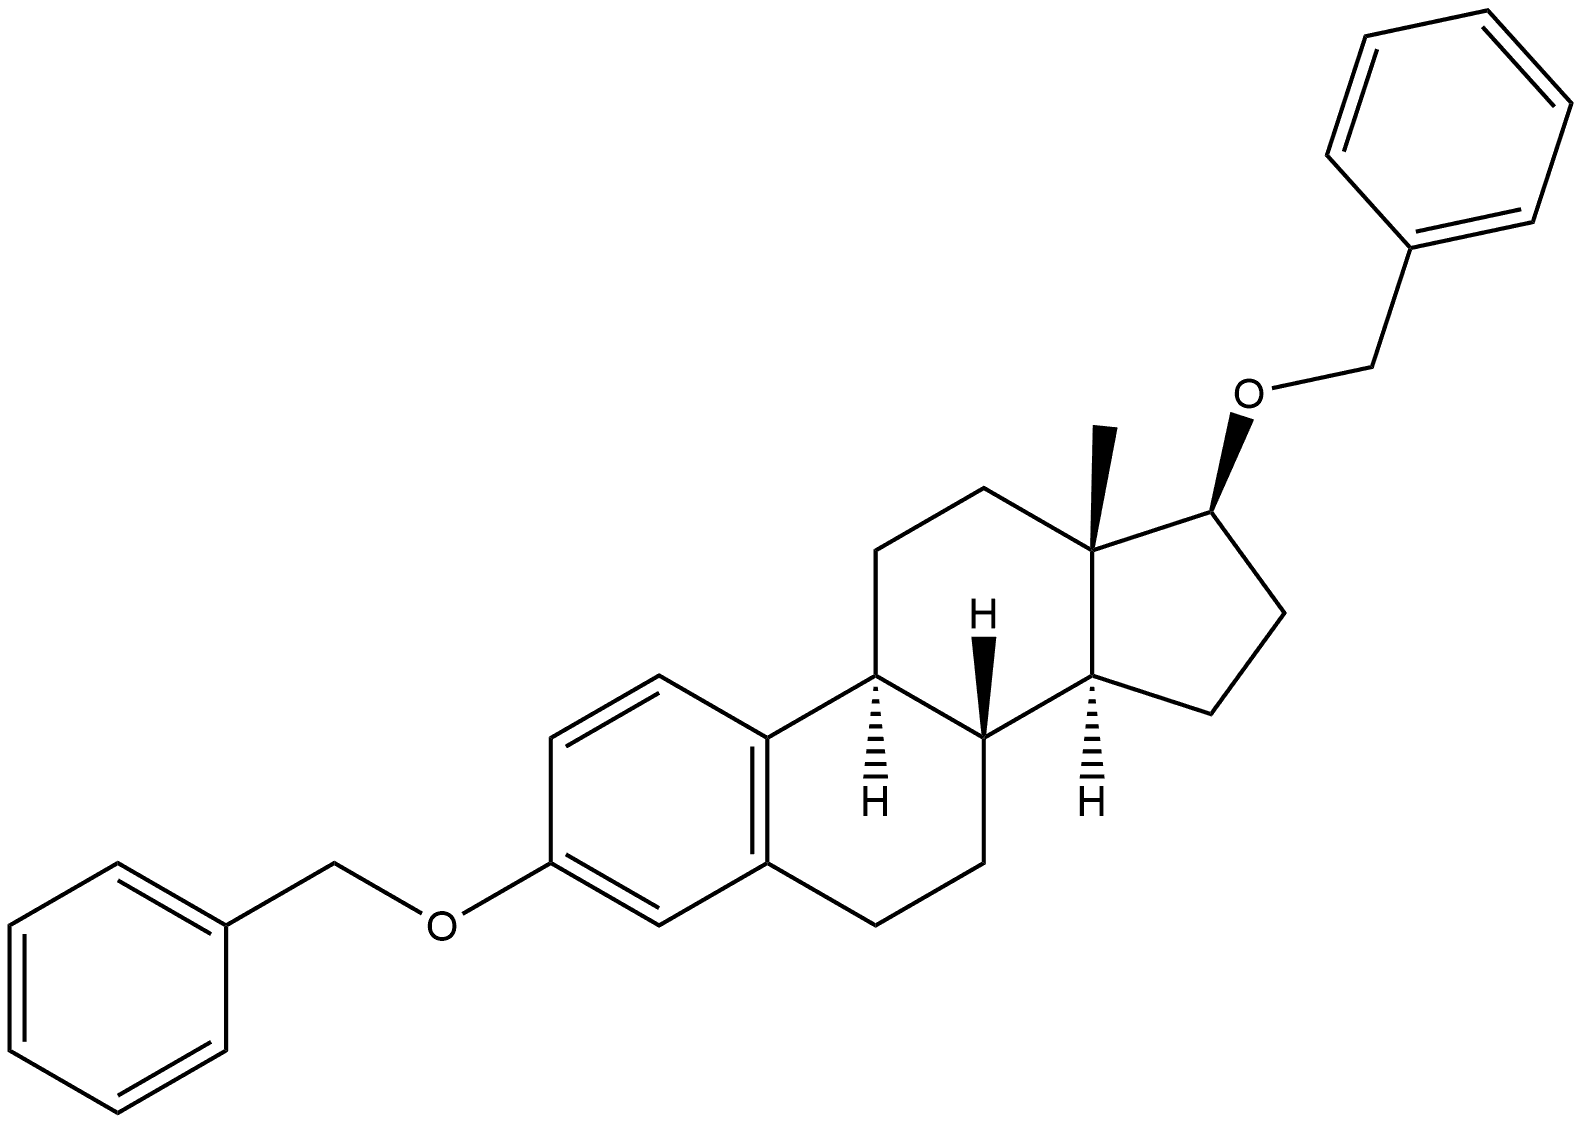 Estra-1,3,5(10)-triene, 3,17-bis(phenylmethoxy)-, (17β)-